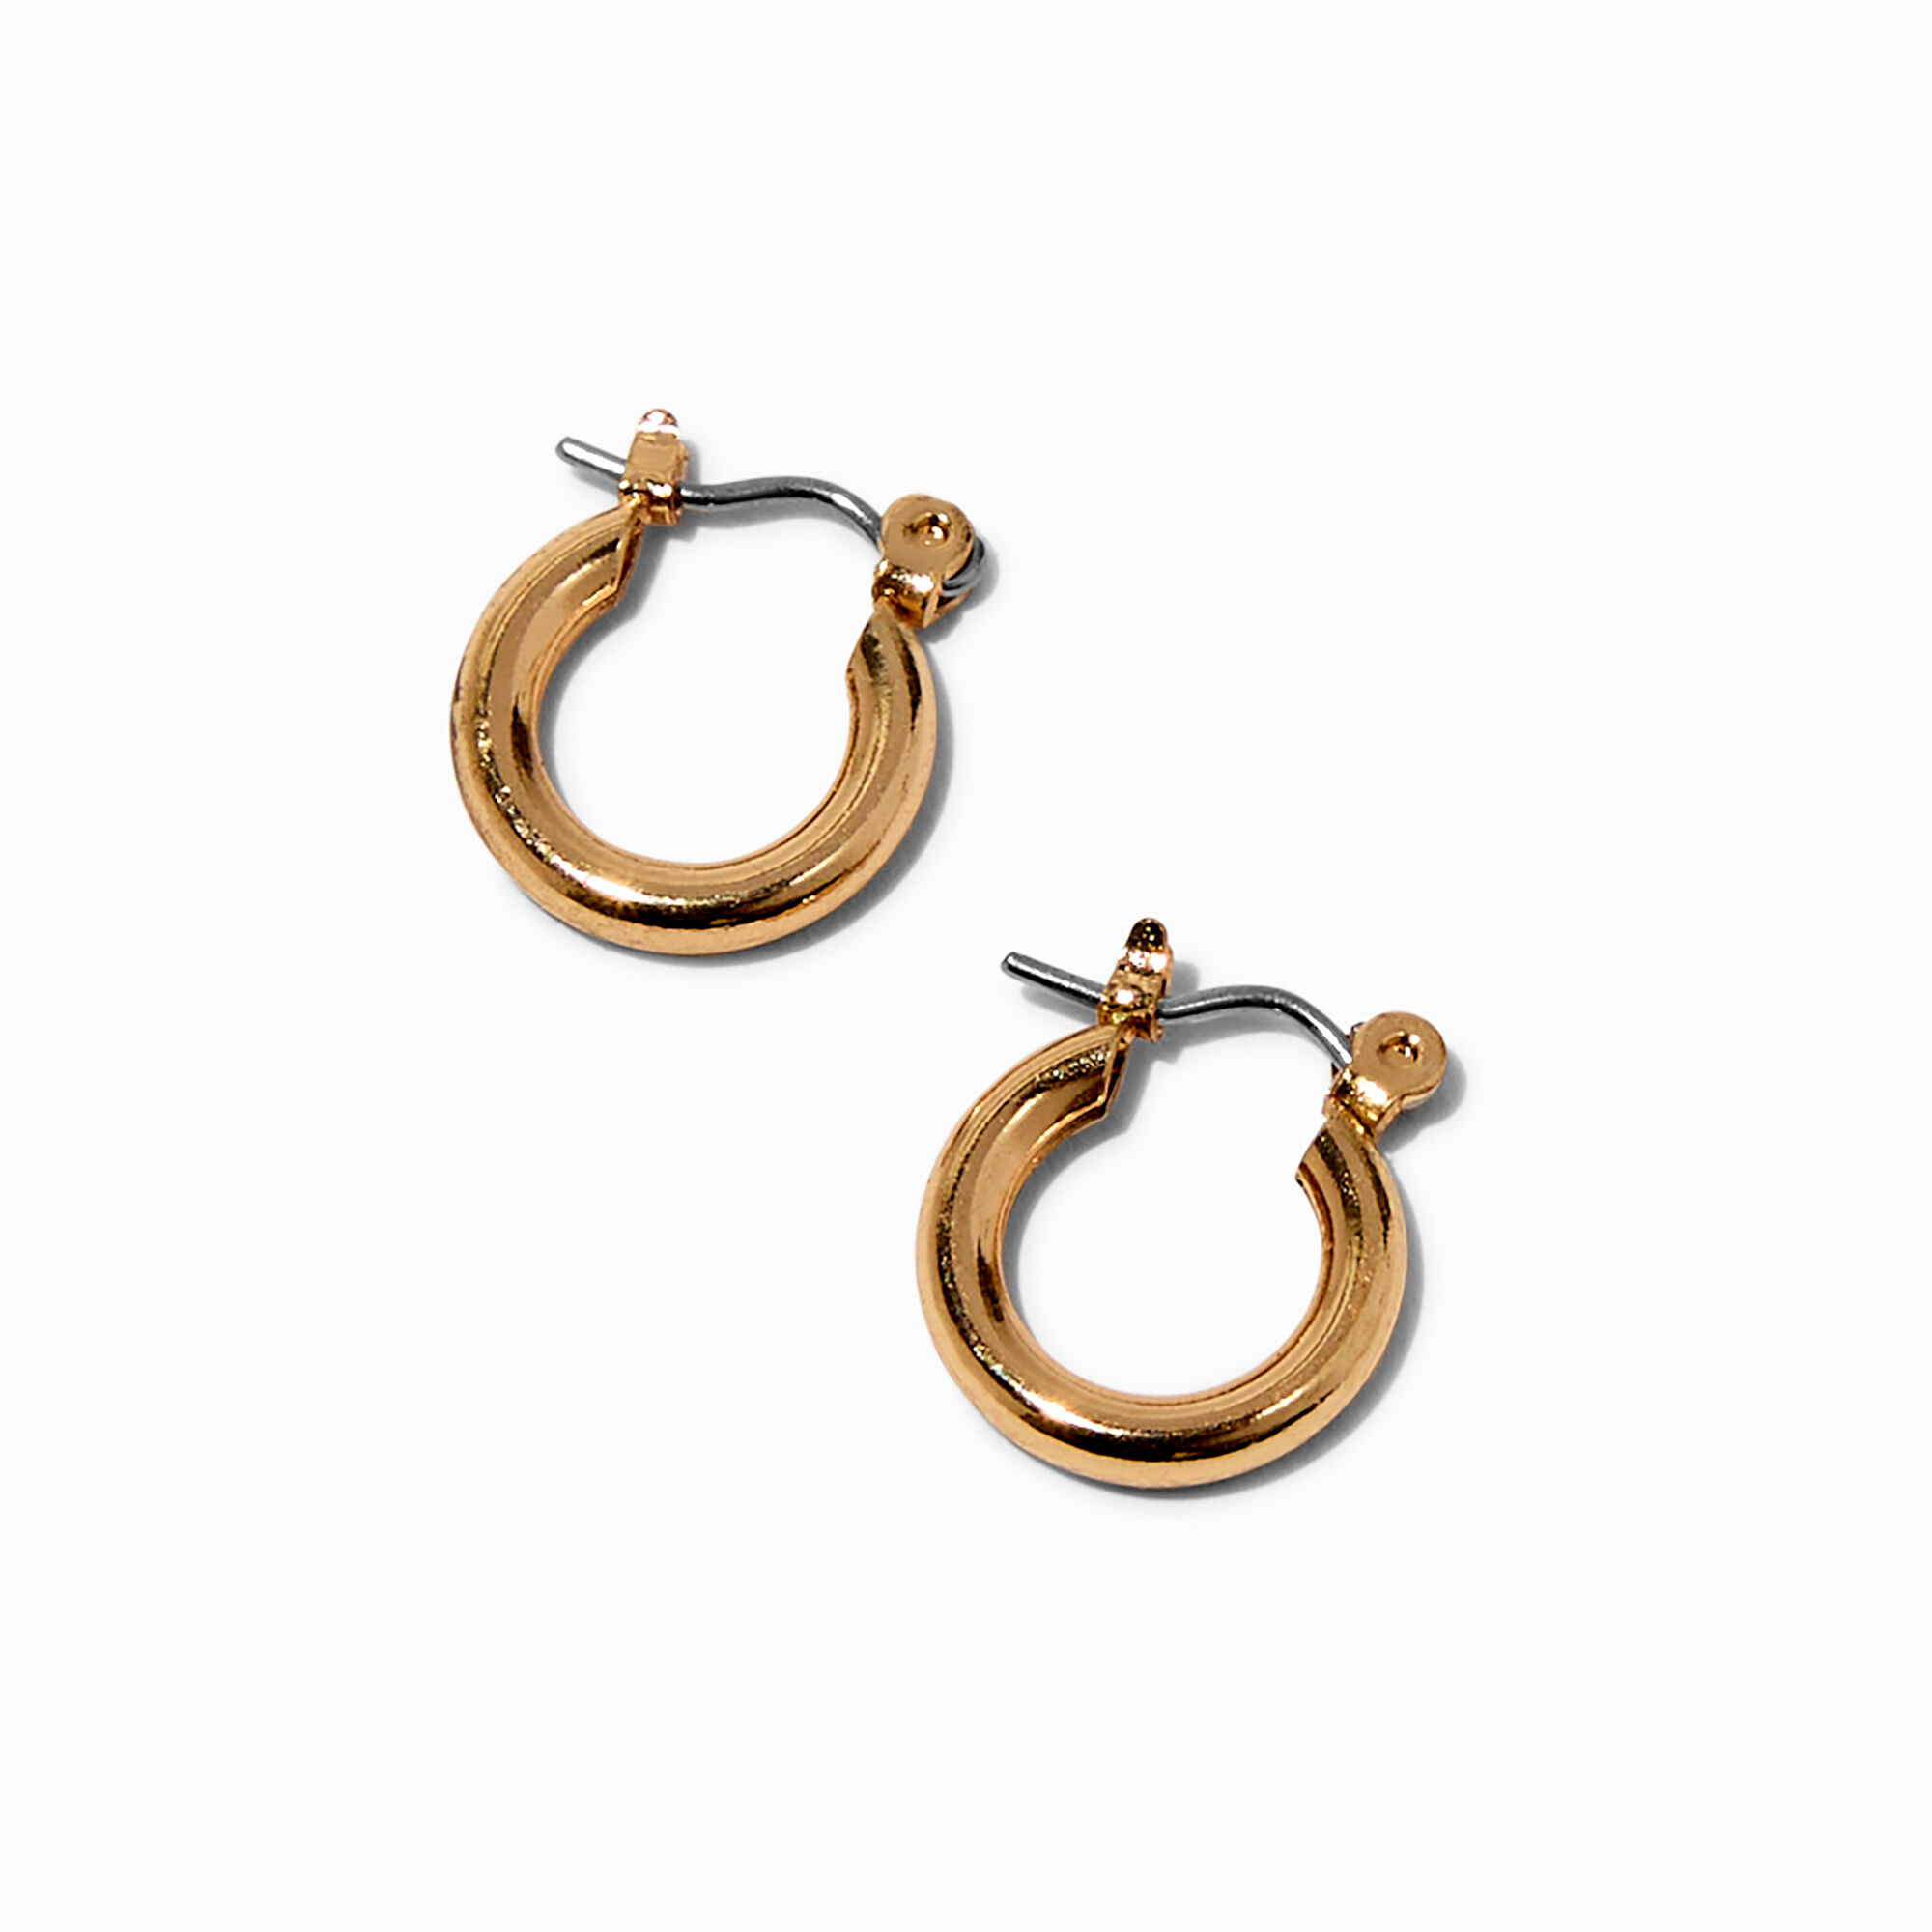 Update more than 211 10mm gold hoop earrings best